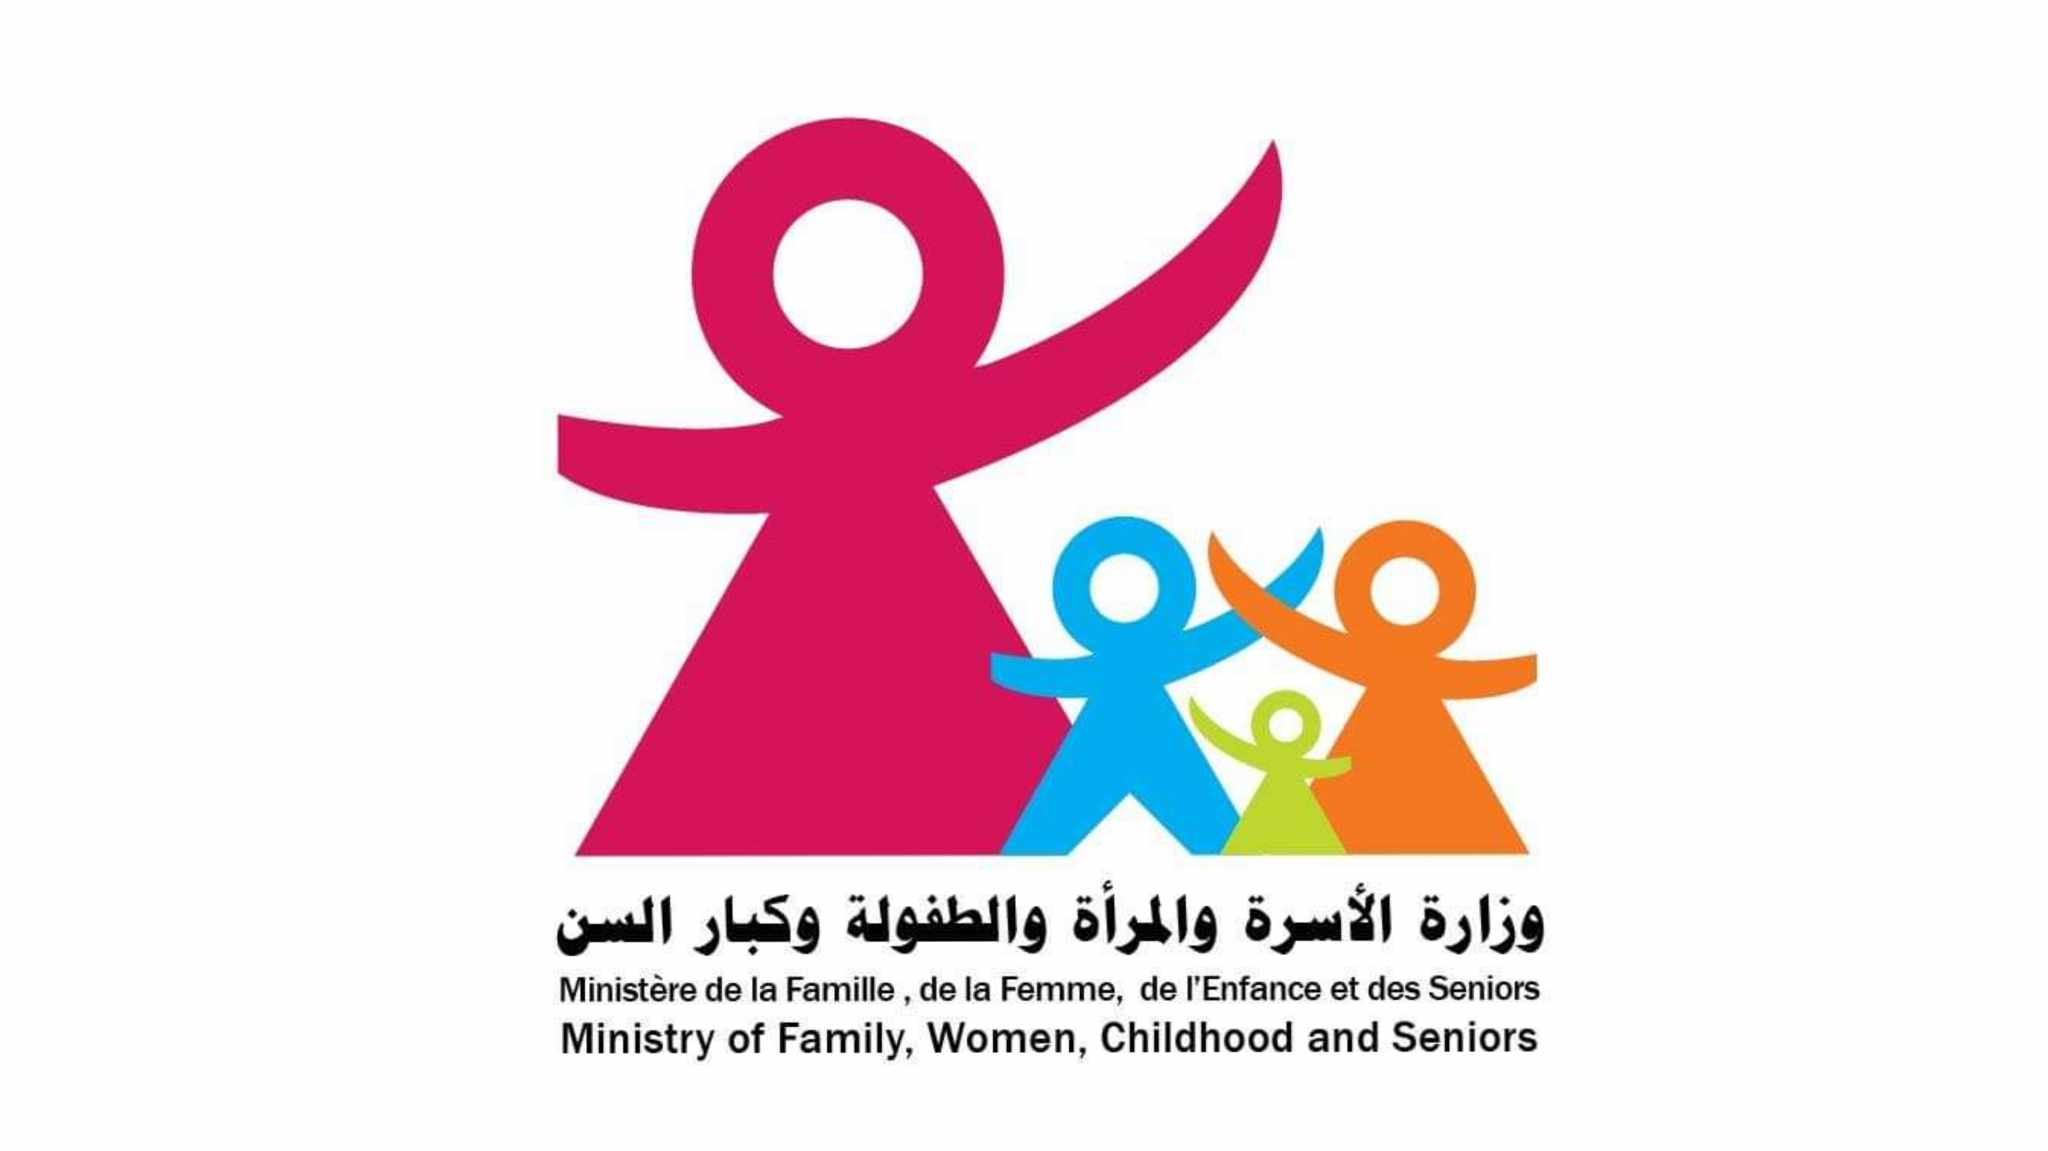  وزارة الأسرة تطلق استبيانا حول انتظارات الأولياء وتطلعاتهم من خدمات المحاضن المدرسيّة